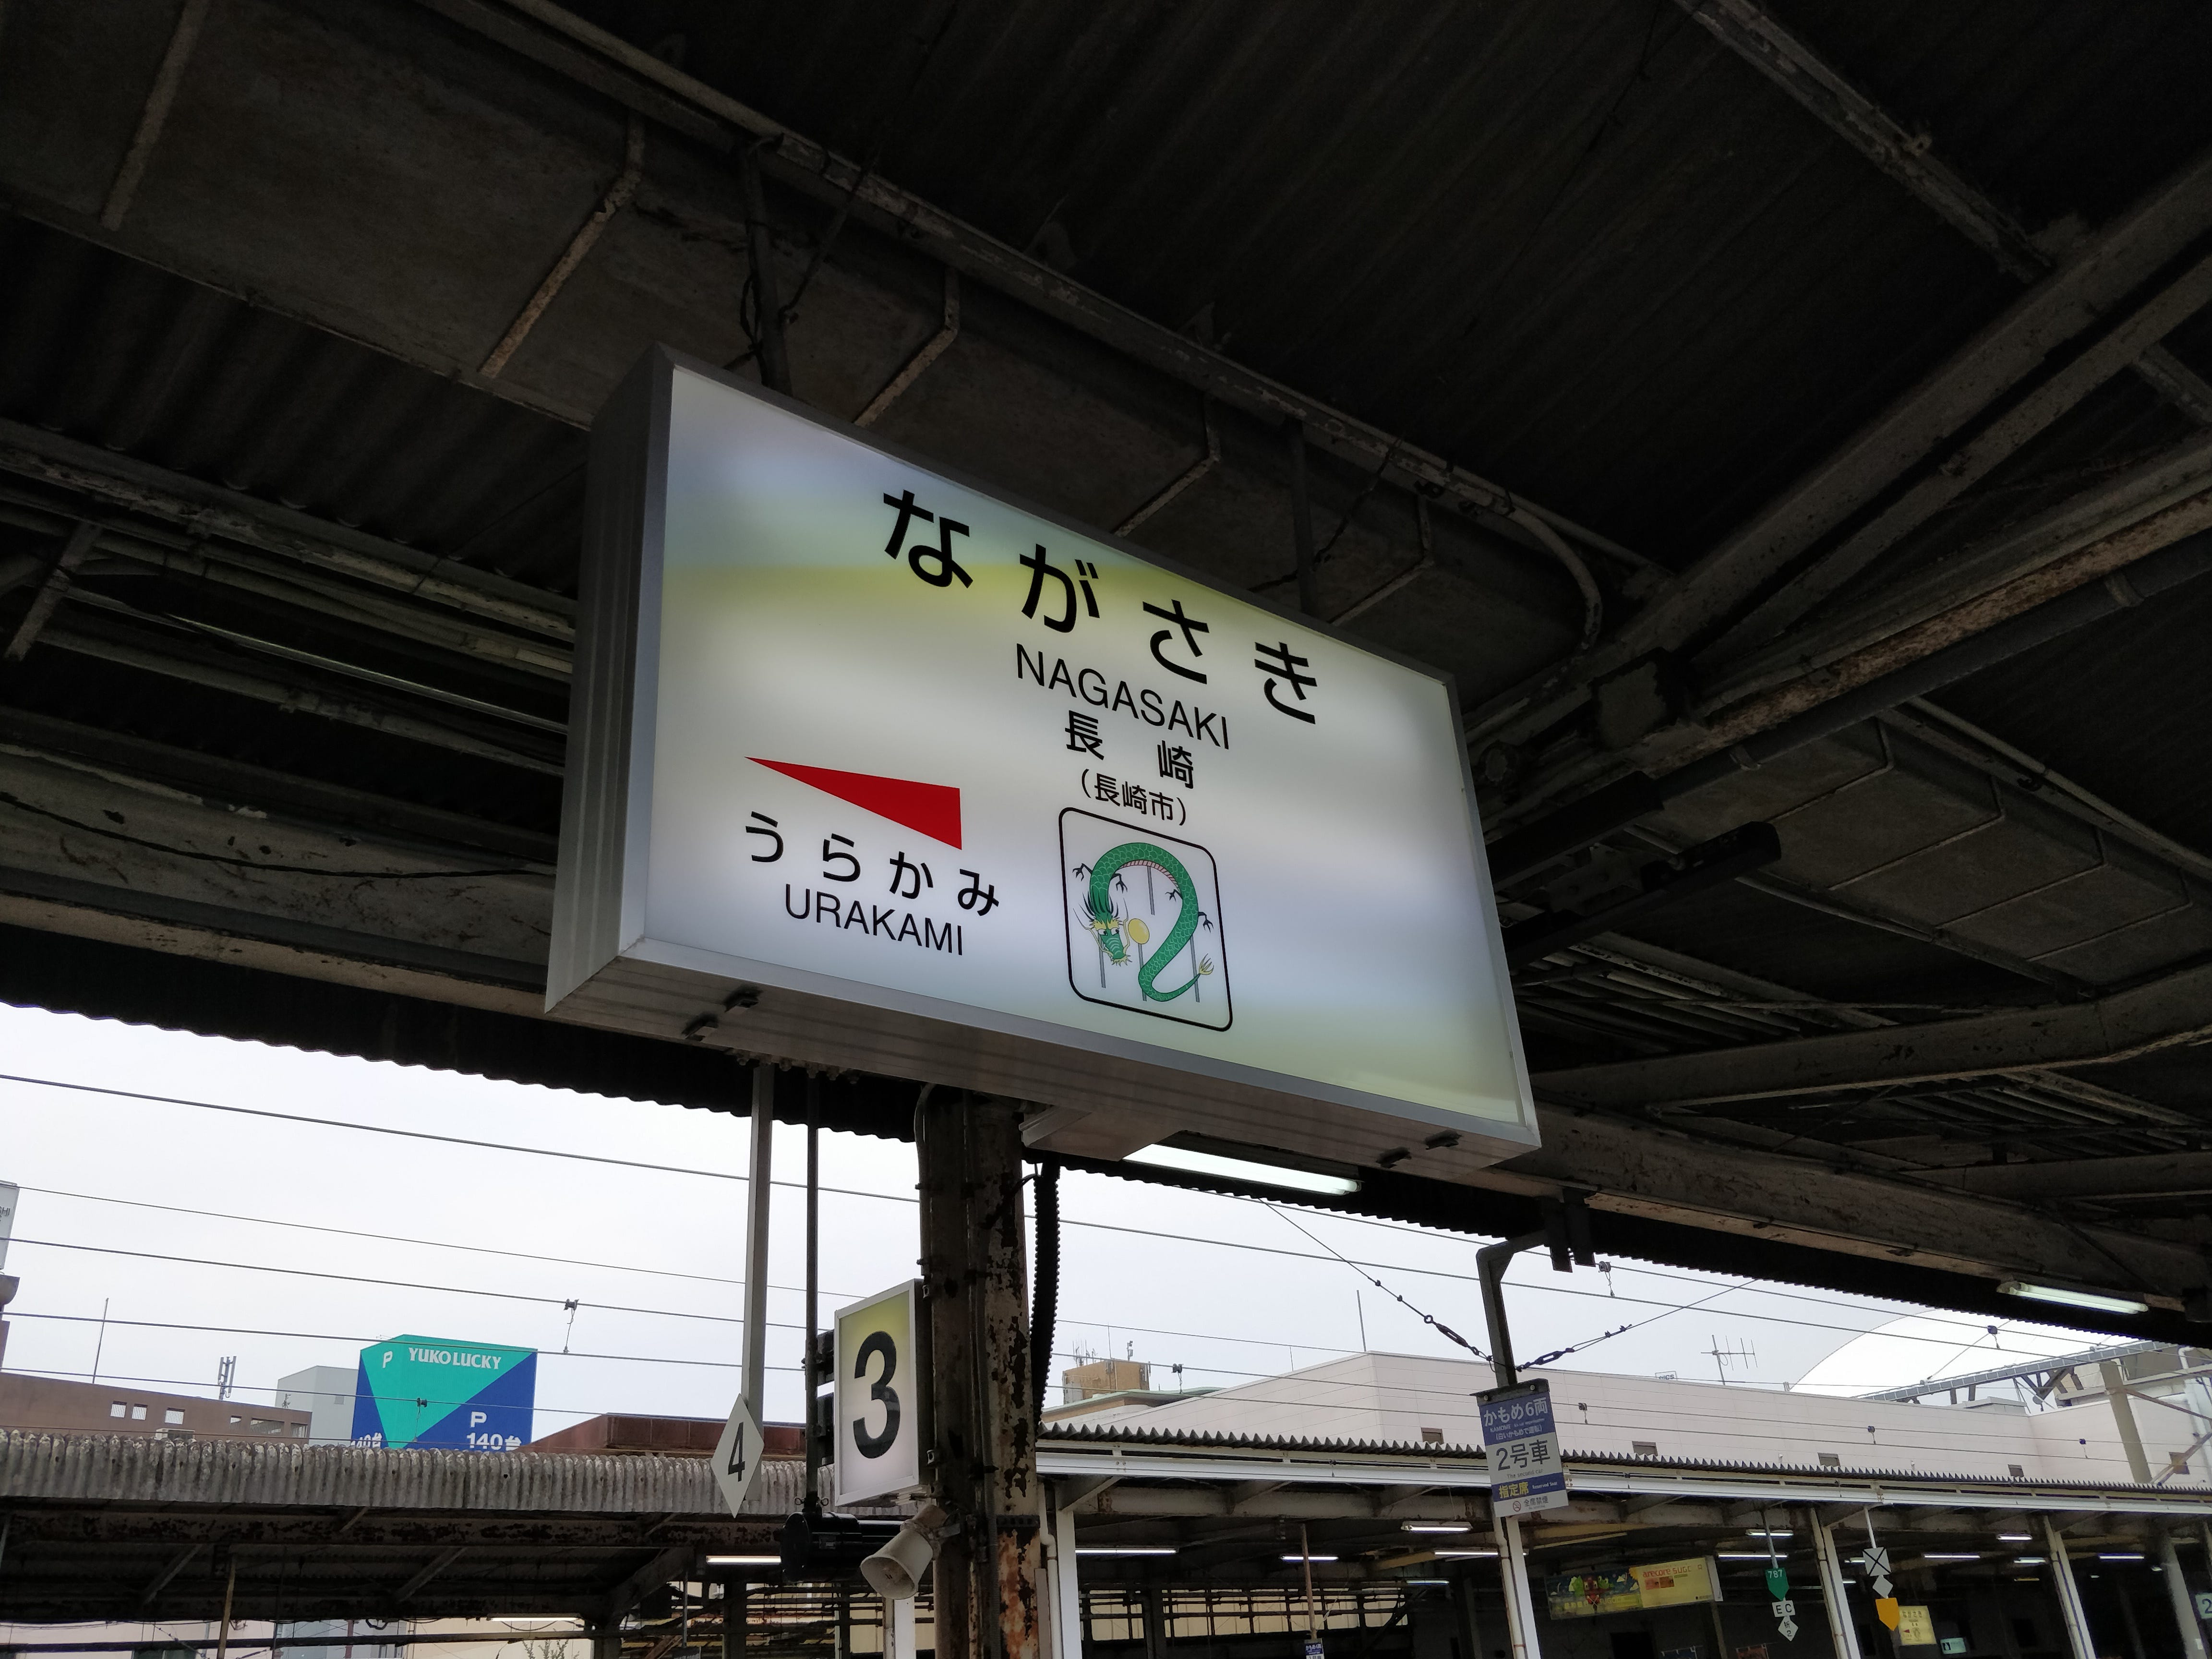 ป้ายสถานี Nagasaki โดยเพื่อนๆ จะสังเกตได้ว่ามีภาพประกอบสถานีด้วย